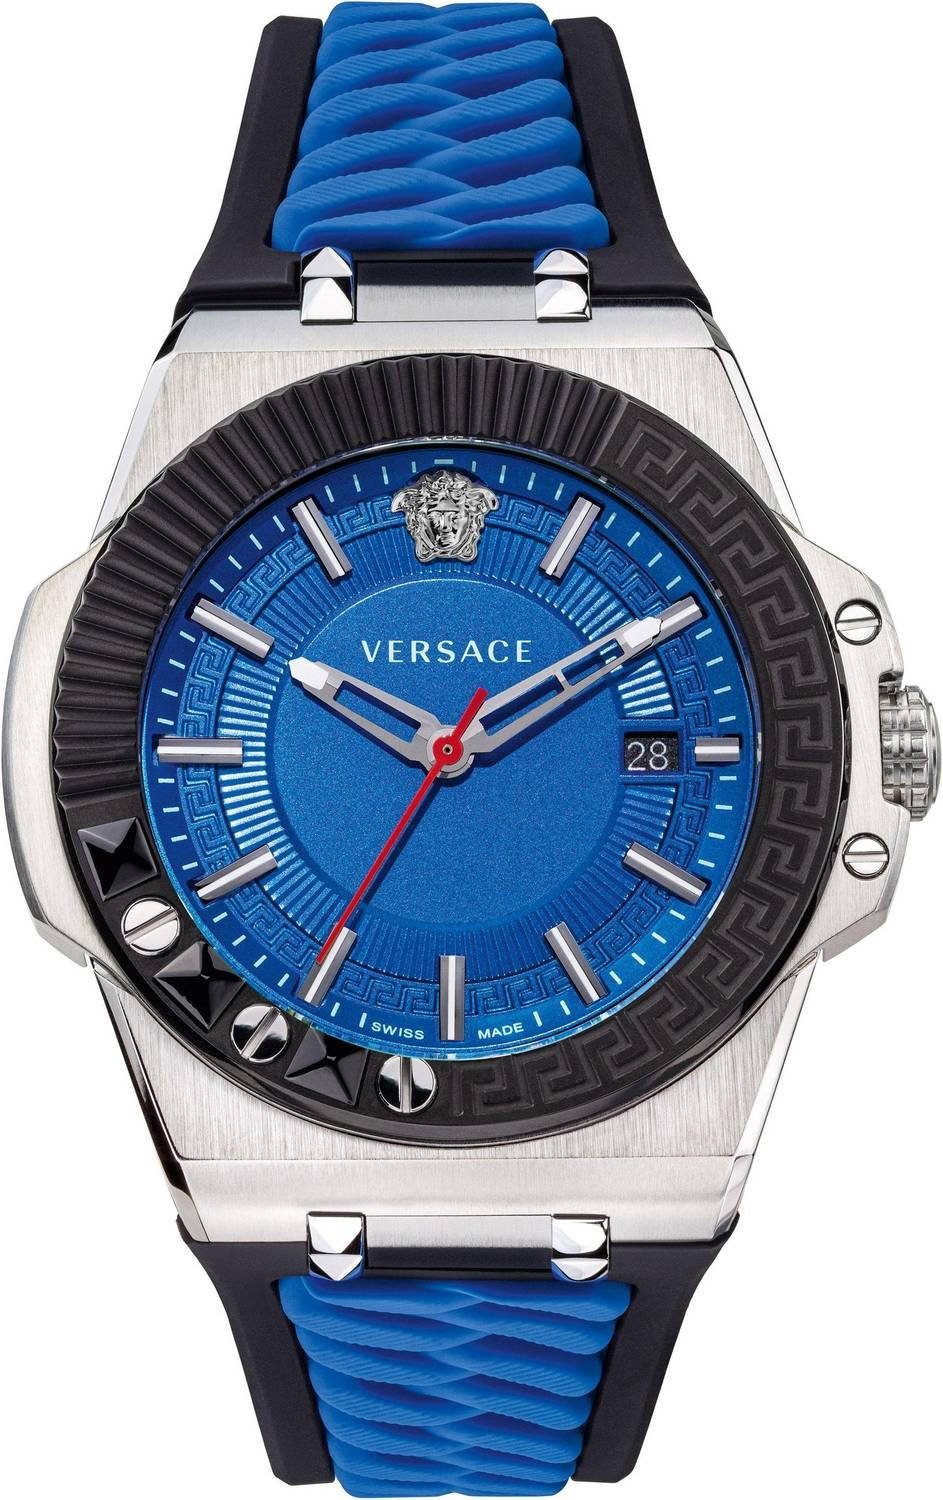 Versace Schweizer Uhr Chain Reaction